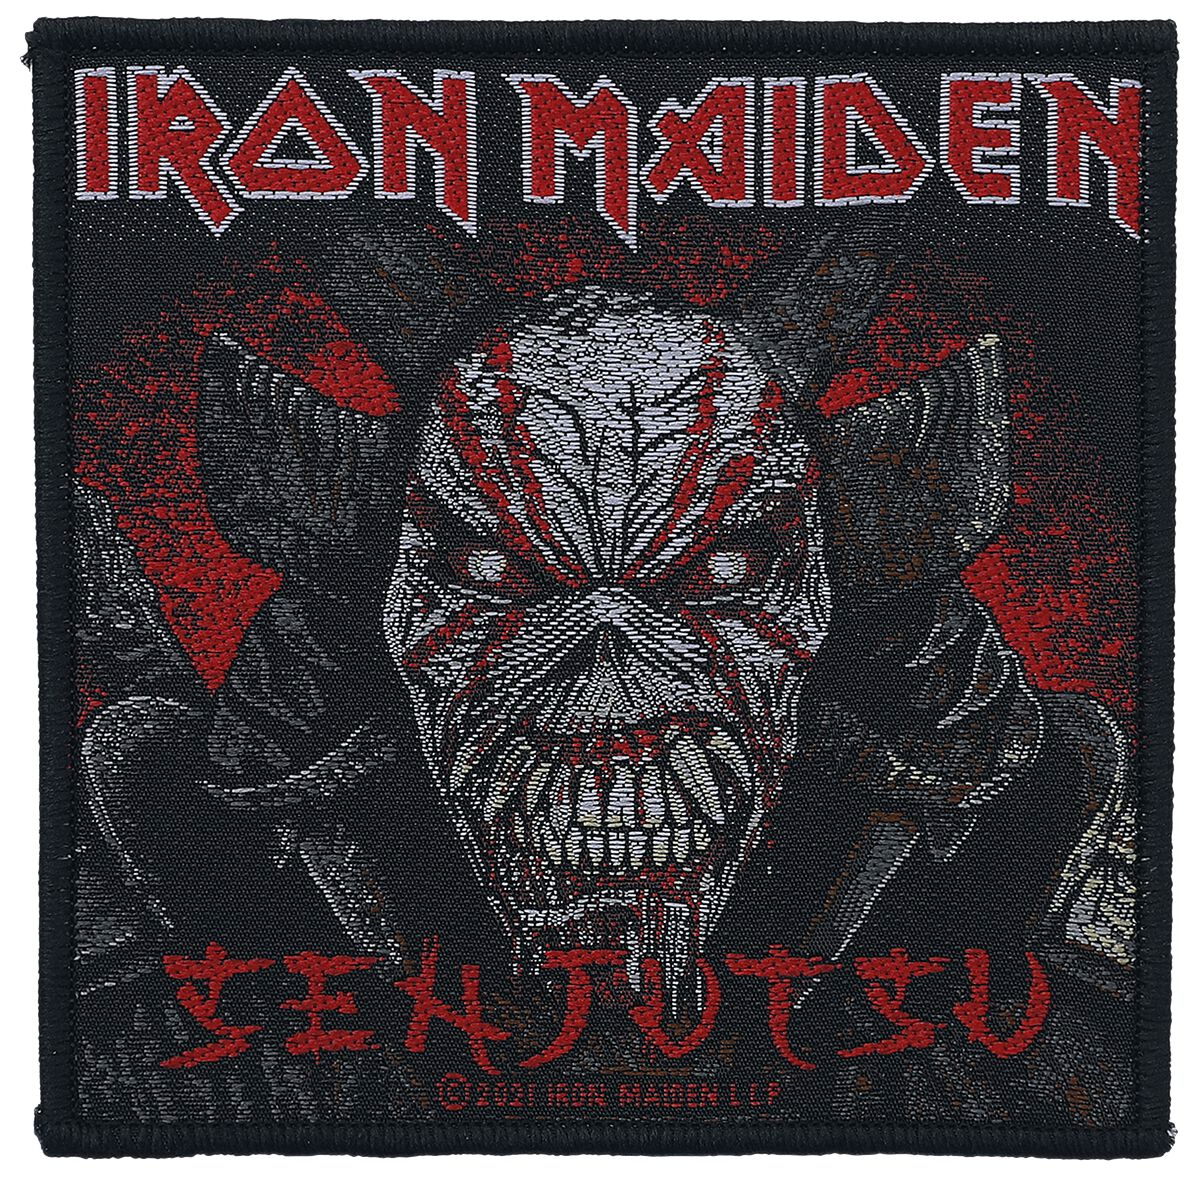 Senjutsu Back Cover Patch schwarz/rot von Iron Maiden